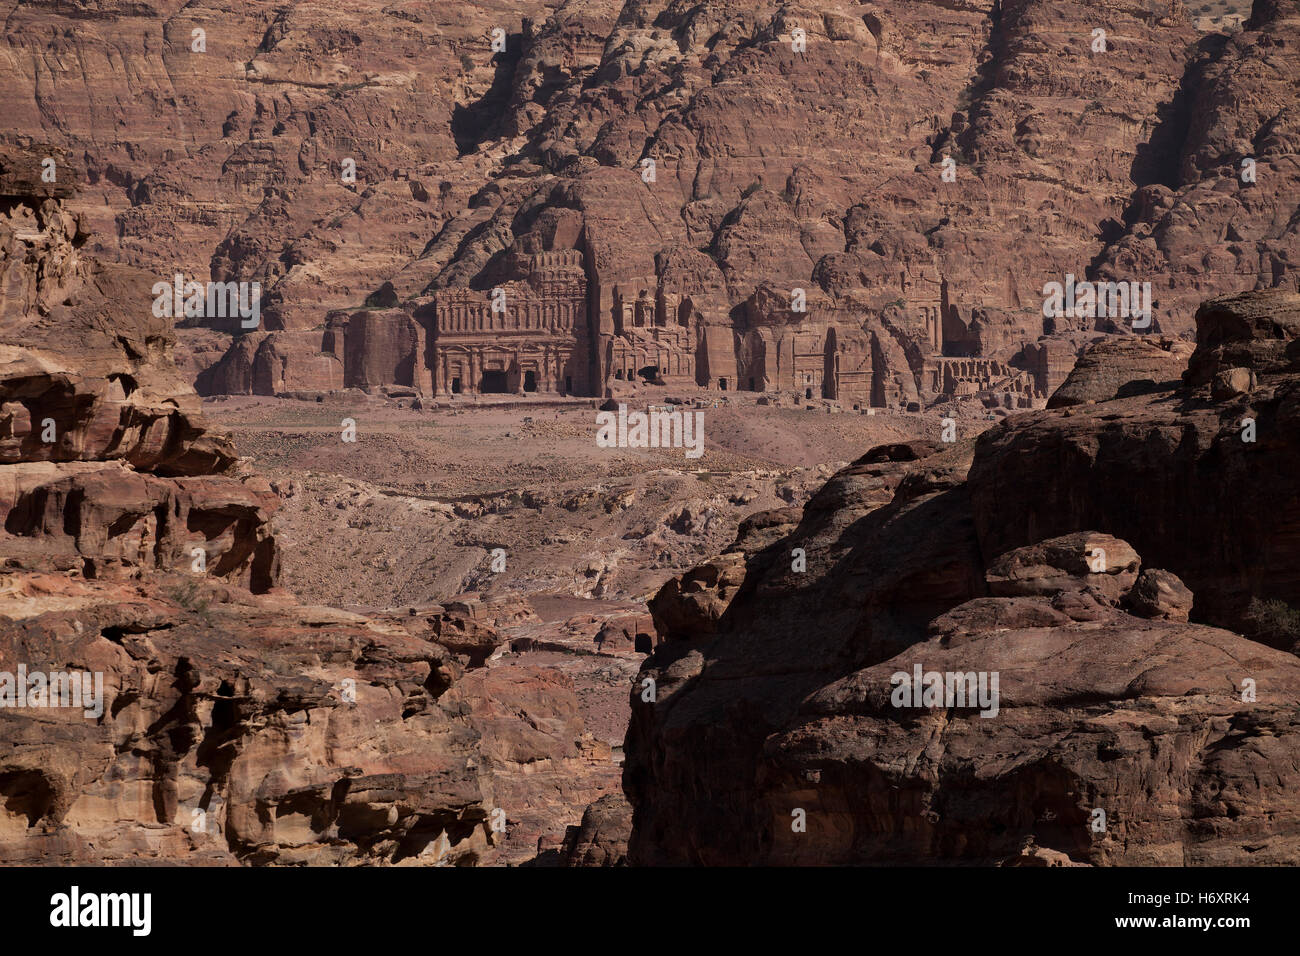 Alten nabatäischen Rock geschnitten Denkmal Fassaden geschnitzt in Jabal al-Khubtha, bekannt als "Königsgräber" bei Petra die alte Hauptstadt des Königreiches nabatäischen in der südwestlichen Wüste von Jordanien liegt Stockfoto